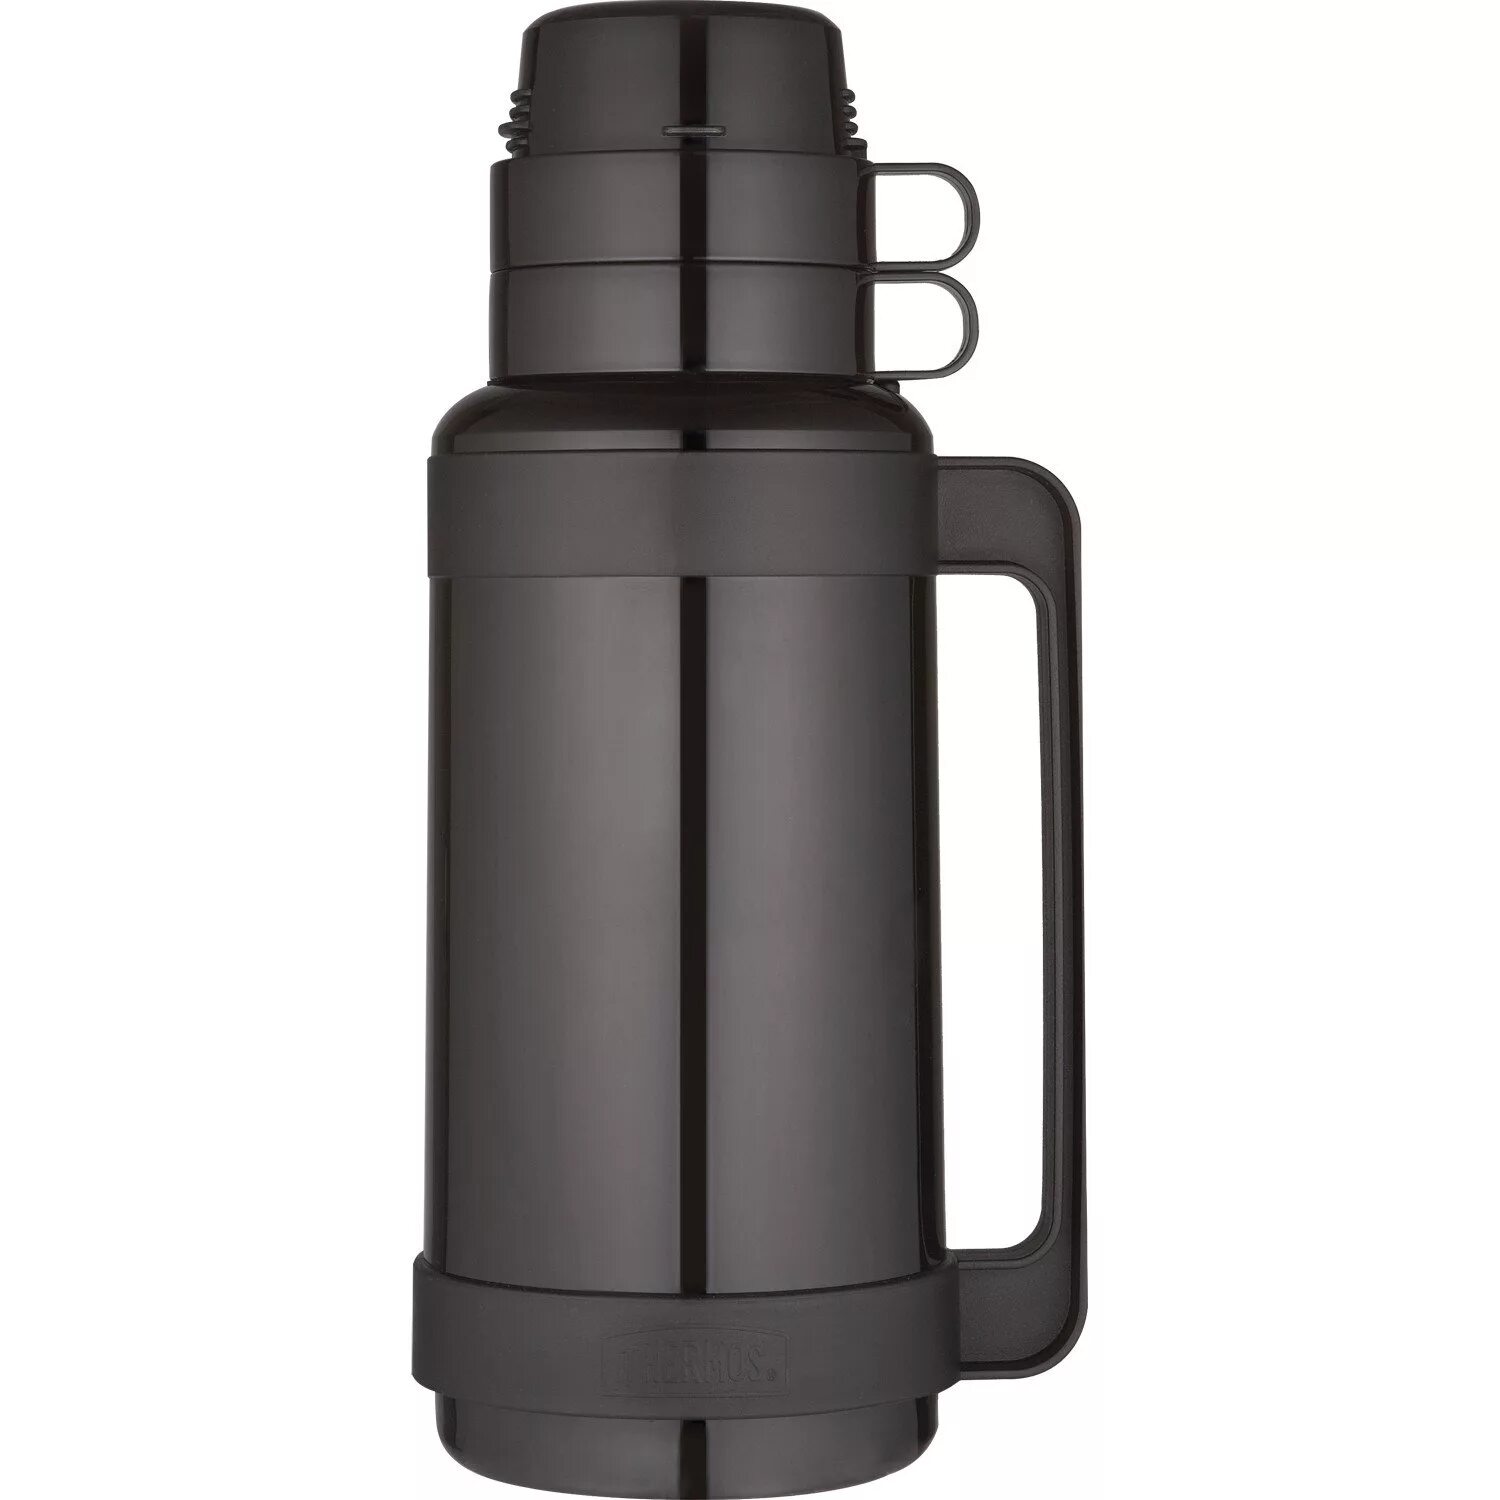 Купить термос 1.8. Vacuum Flask термос 1.8. Термос Vacuum Flask 1 л. Термос Vacuum Flask 1,8 л. Vacuum Flask термос.